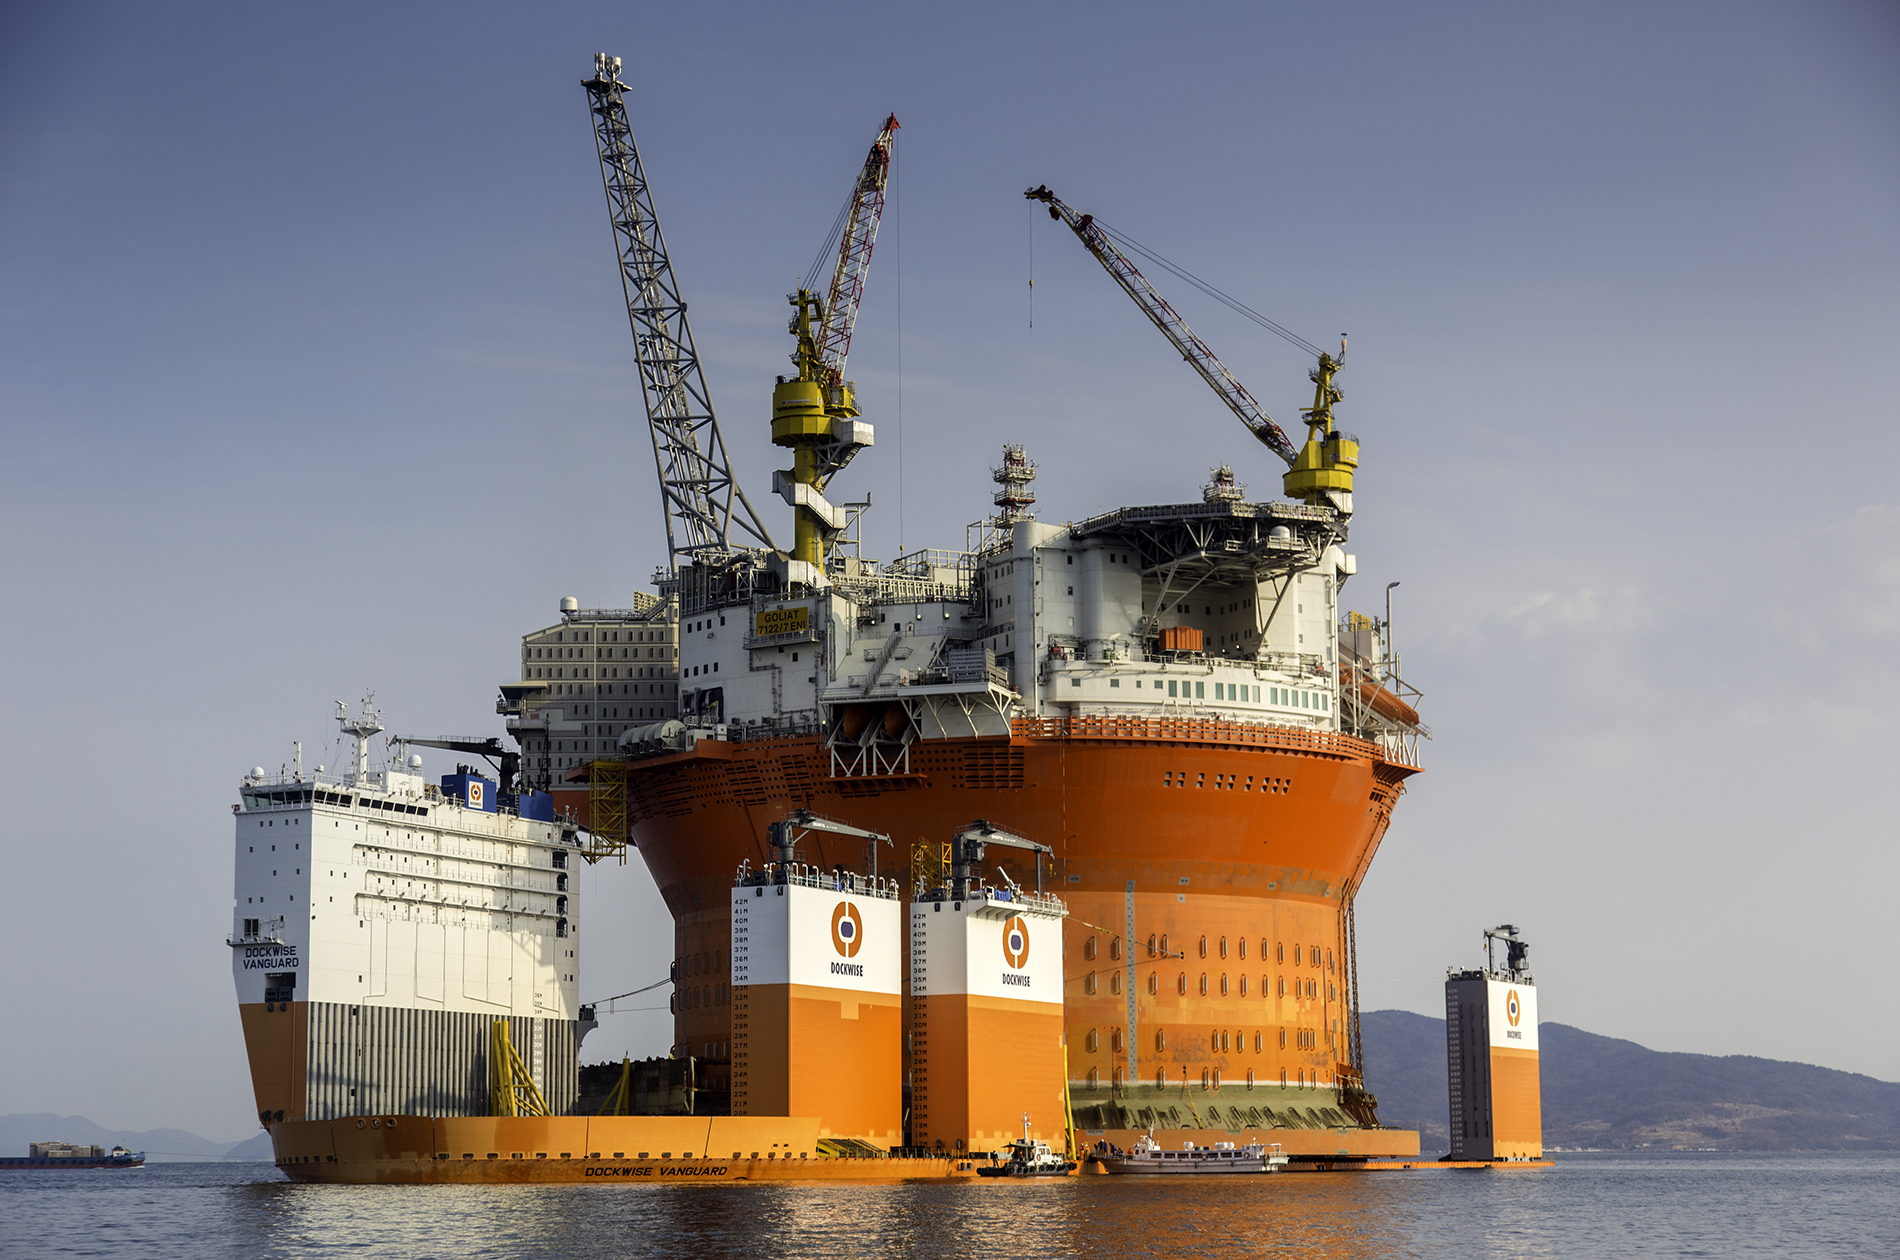 Így néz ki a világ legnagyobb fúrótornya, amint a világ legnagyobb szállítóhajójára teszik